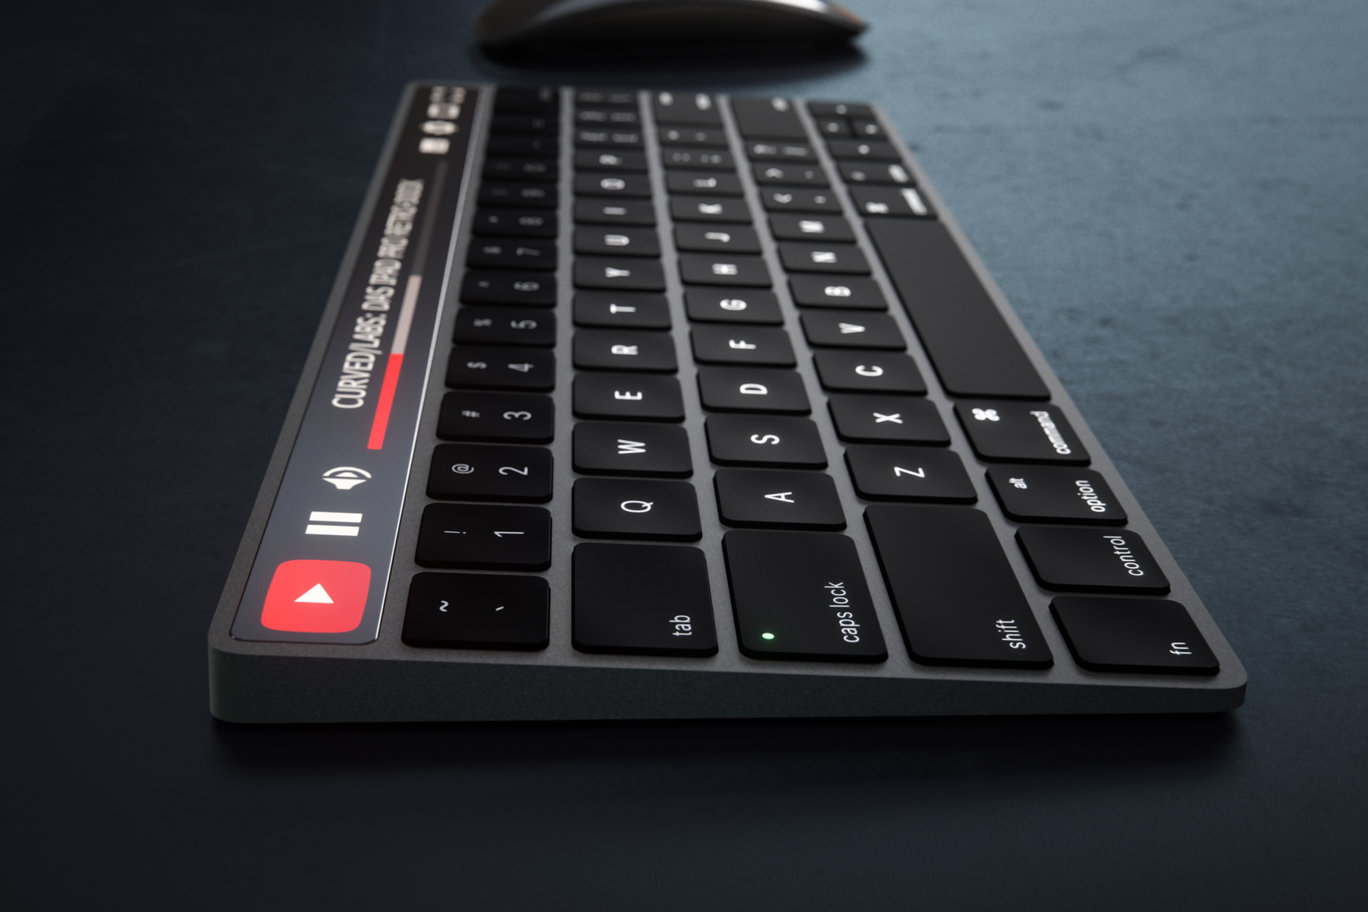 ｢Apple Magic Keyboard｣にOLEDタッチバーが搭載されるとこんな感じに?? 予想画像公開 気になる、記になる…